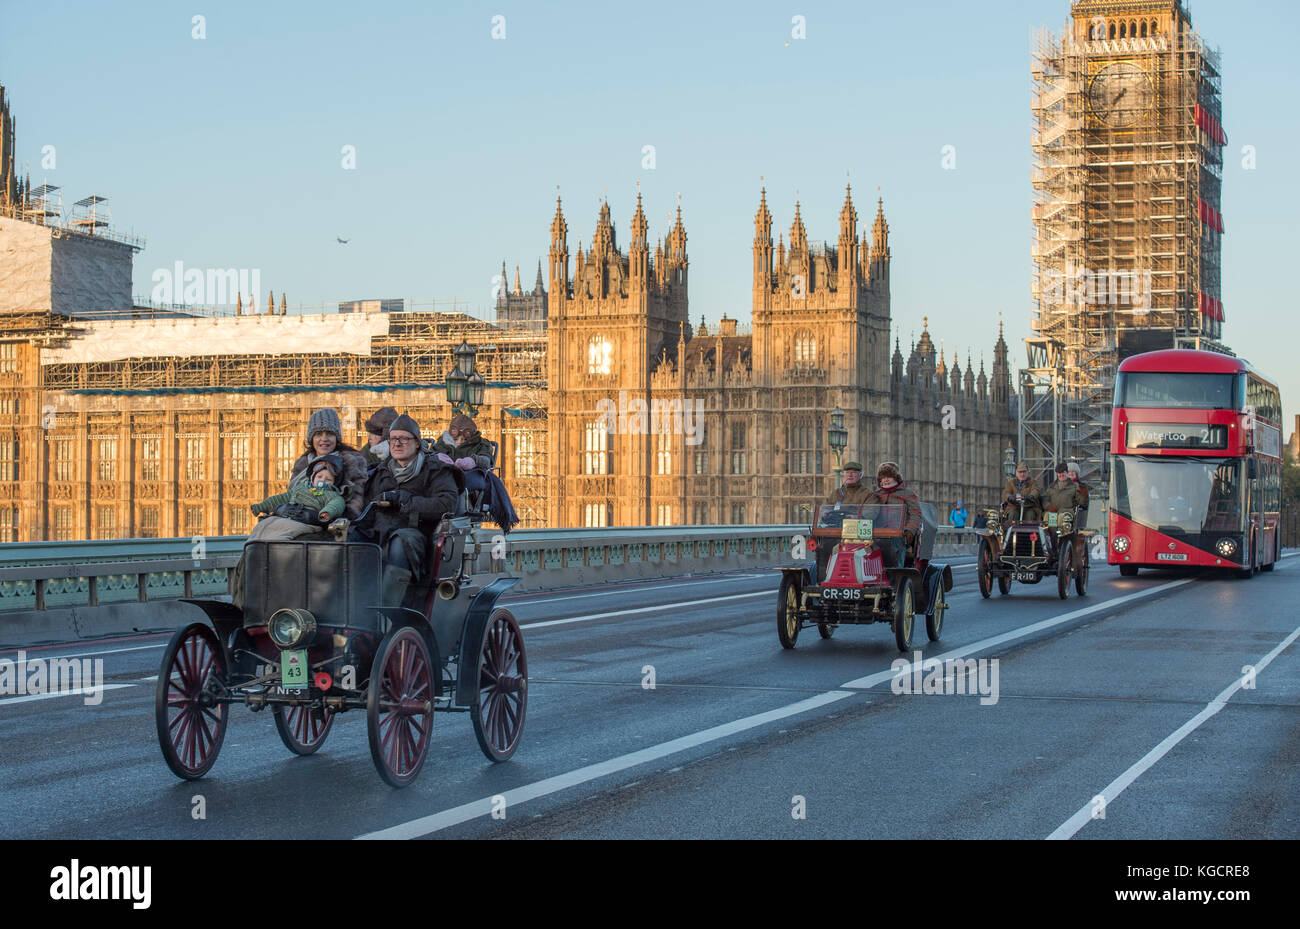 5 novembre 2017. Bonhams de Londres à Brighton, le plus long événement automobile au monde, le 1900 Cleveland Electric Westminster Bridge. Banque D'Images